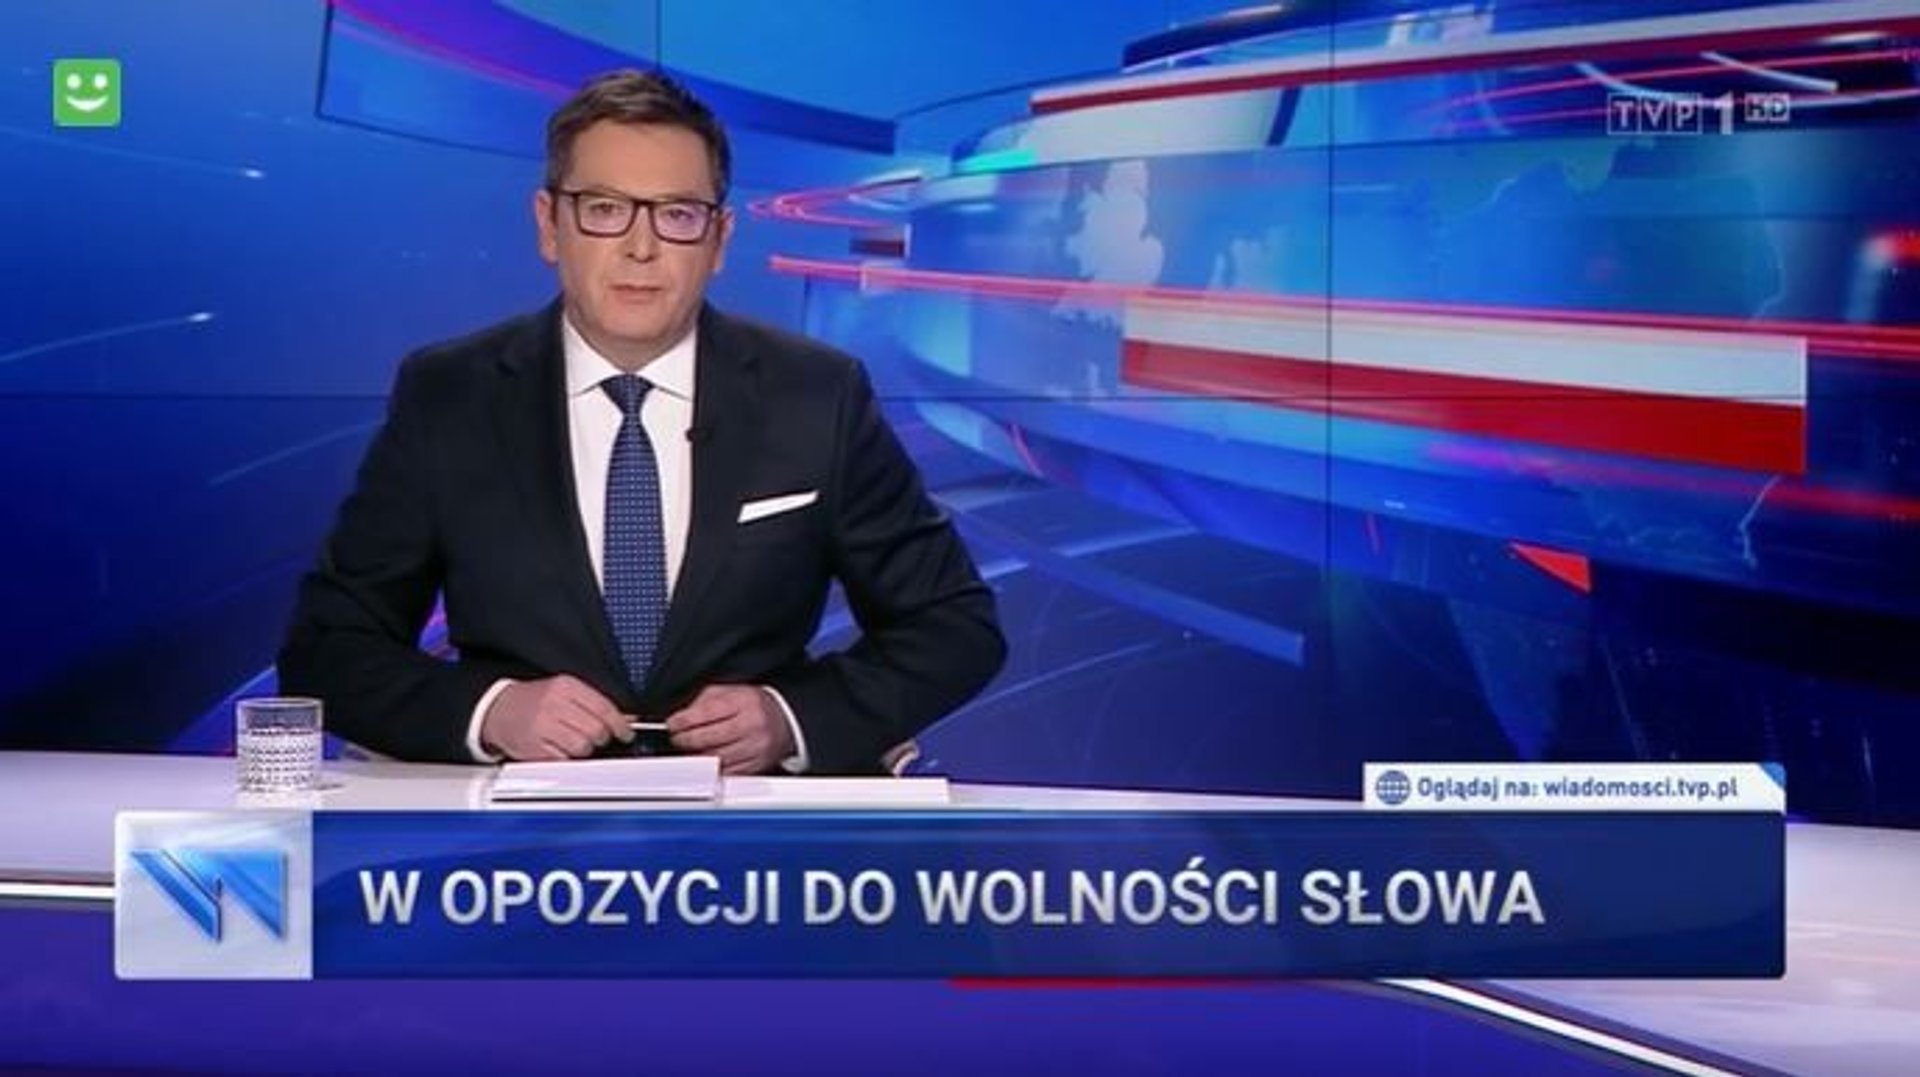 W materiale "Wiadomości" TVP wskazano, że opozycja zamierza ograniczyć wolność słowa.